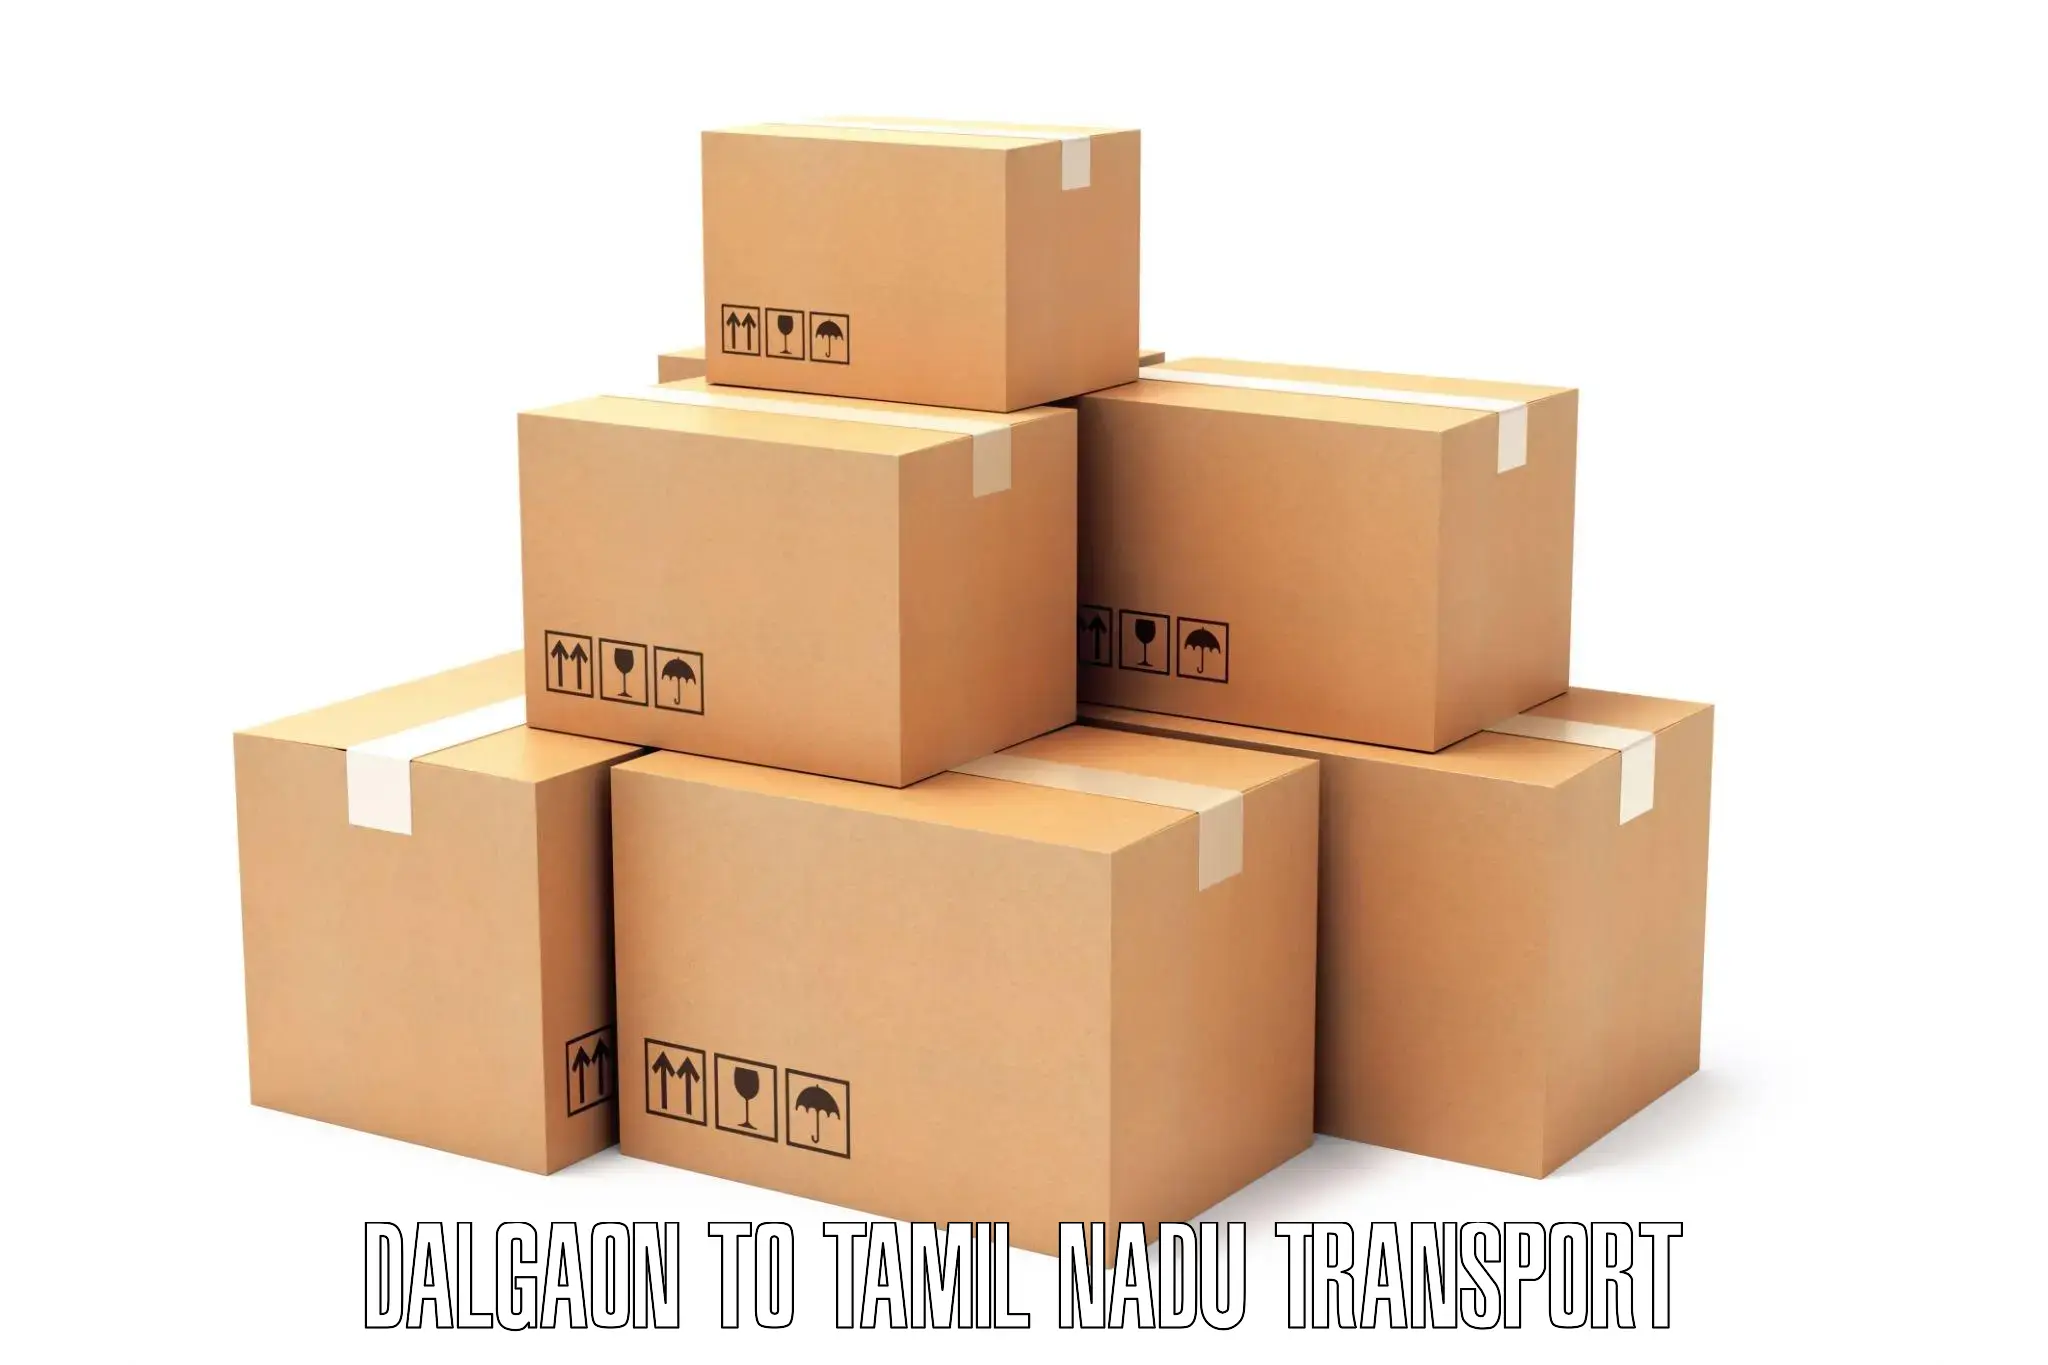 Two wheeler parcel service Dalgaon to Marthandam